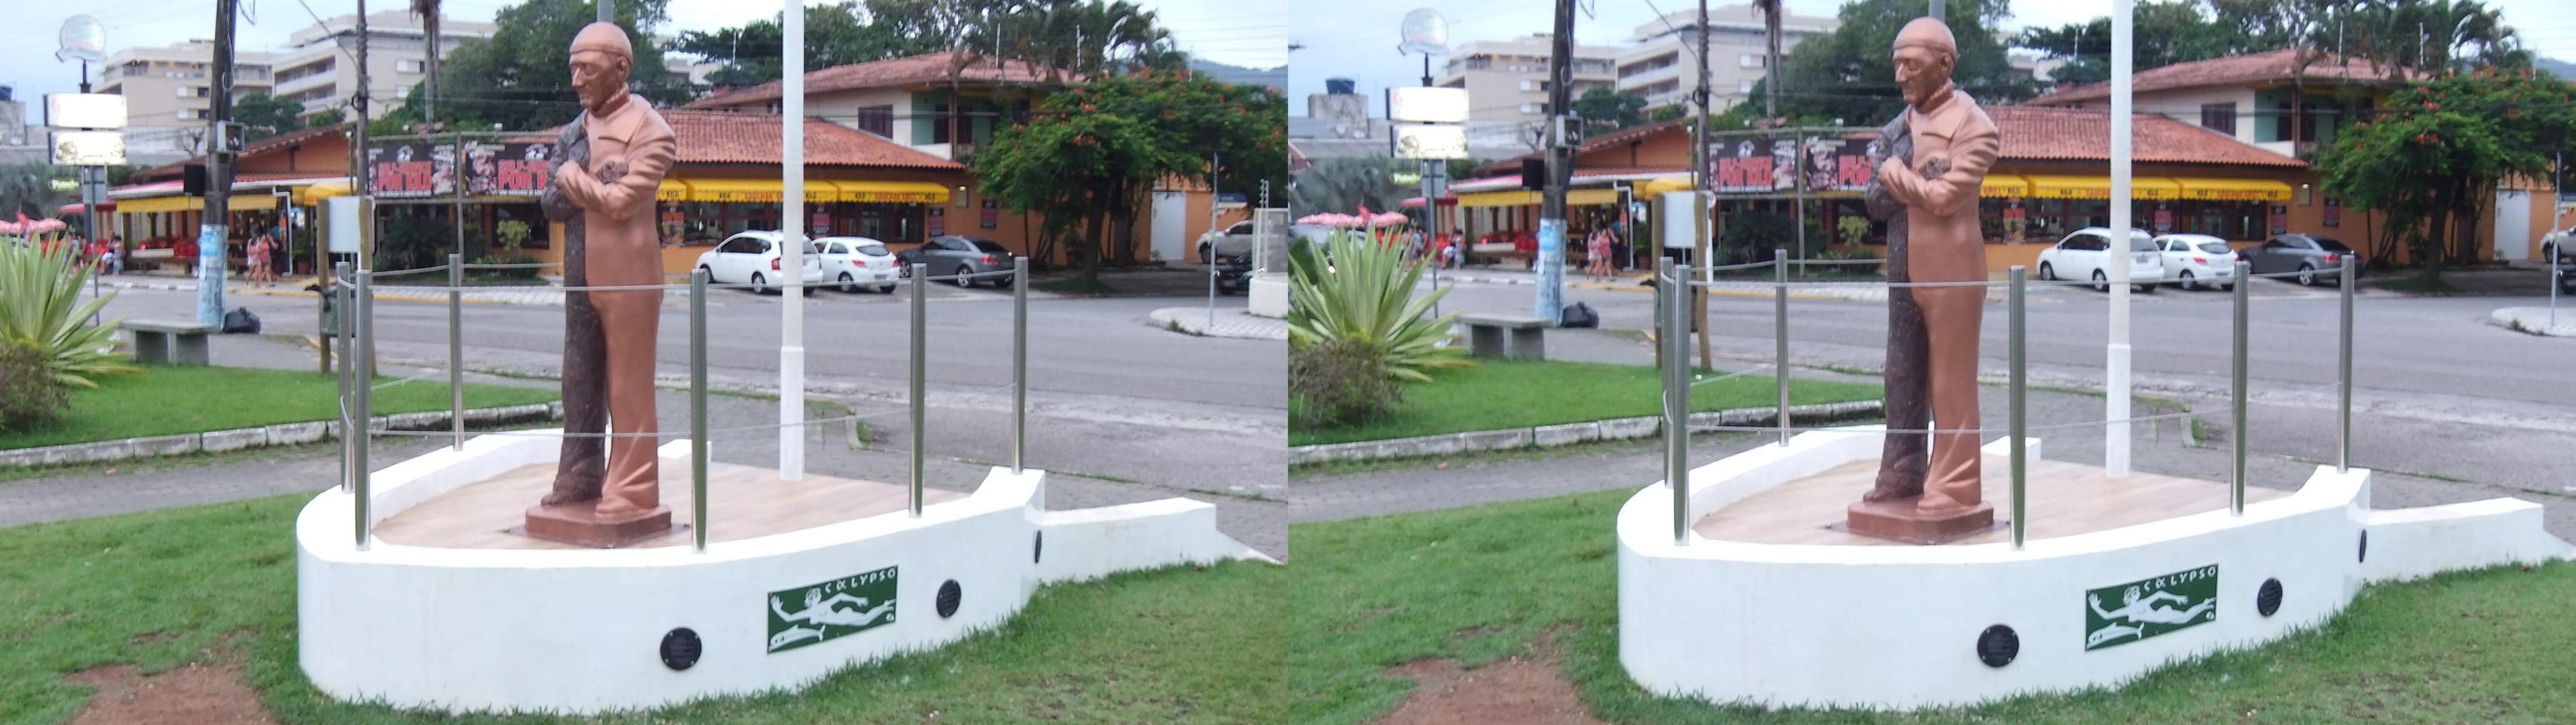 Jacques Cousteau Statue - Ubatuba, SP Brasil - view 02